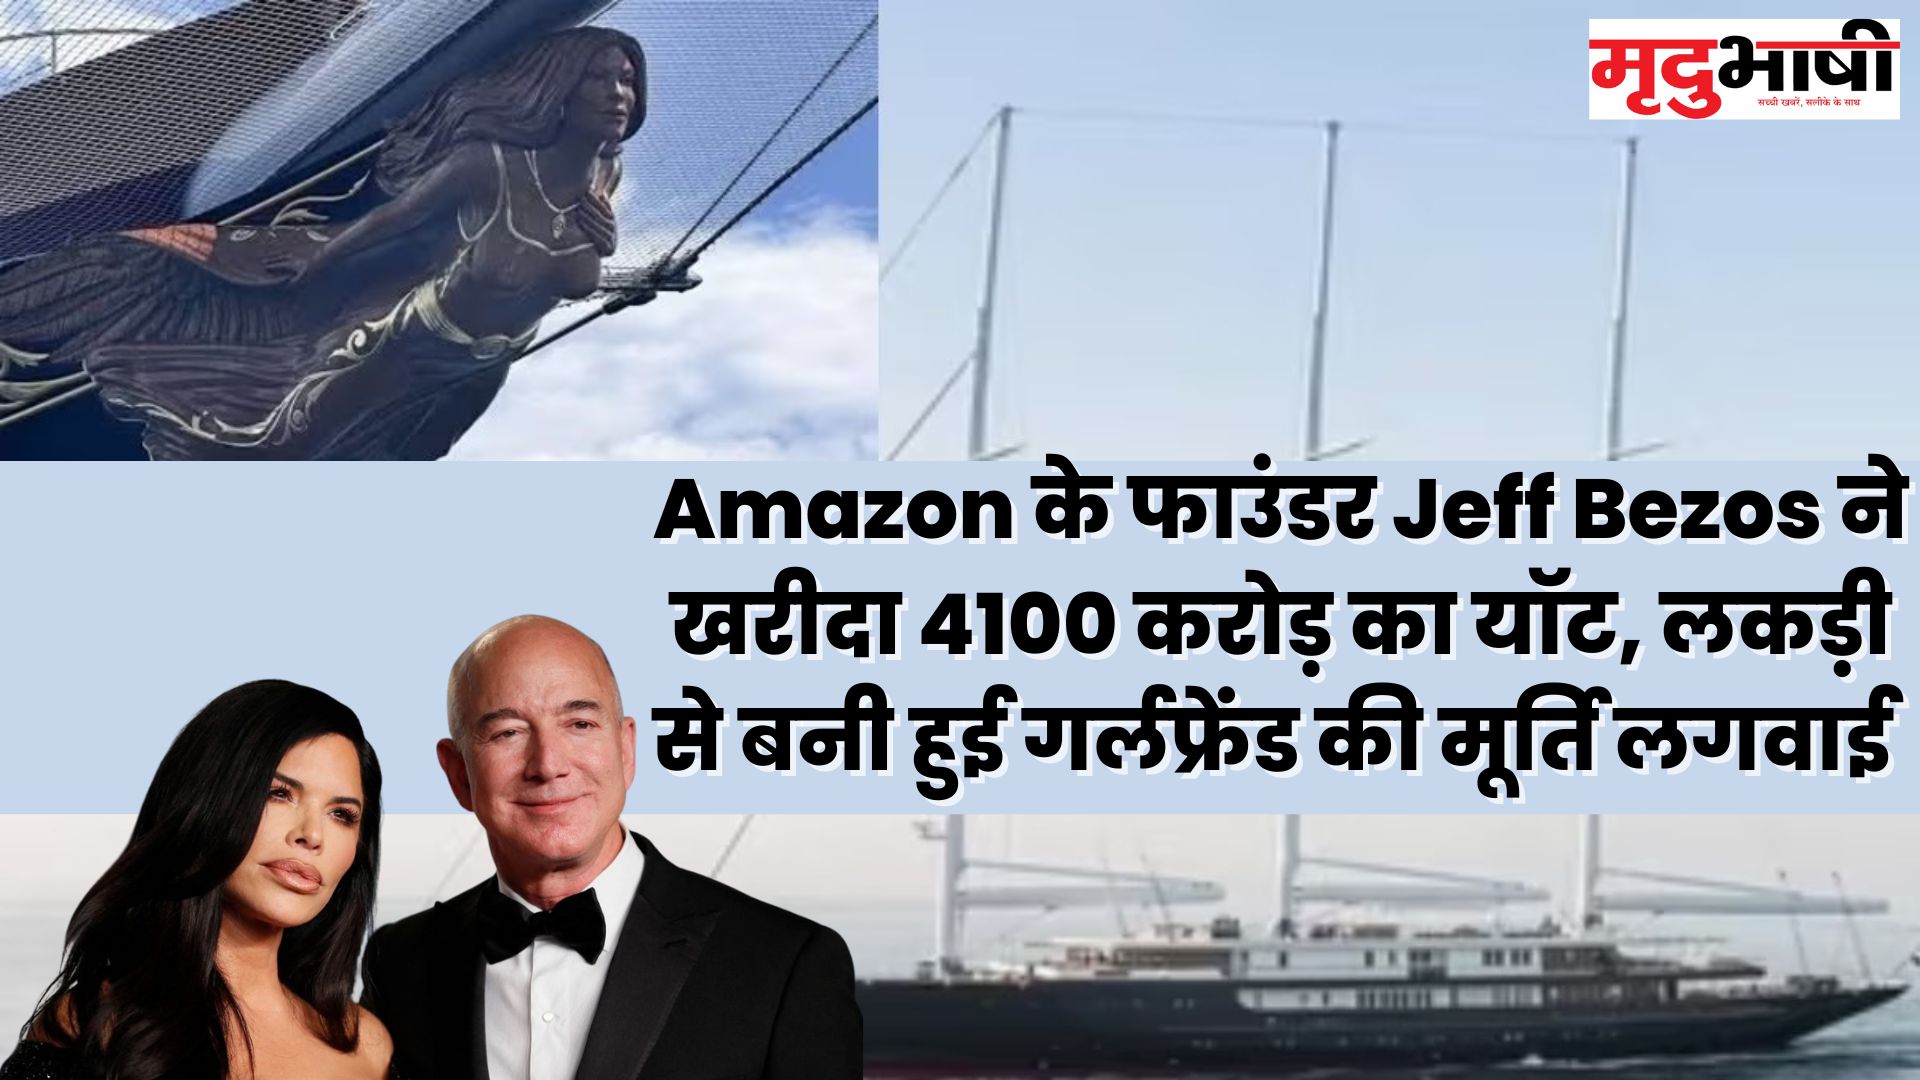 Amazon के फाउंडर Jeff Bezos ने खरीदा 4100 करोड़ का यॉट, लकड़ी से बनी हुई गर्लफ्रेंड की मूर्ति लगवाई